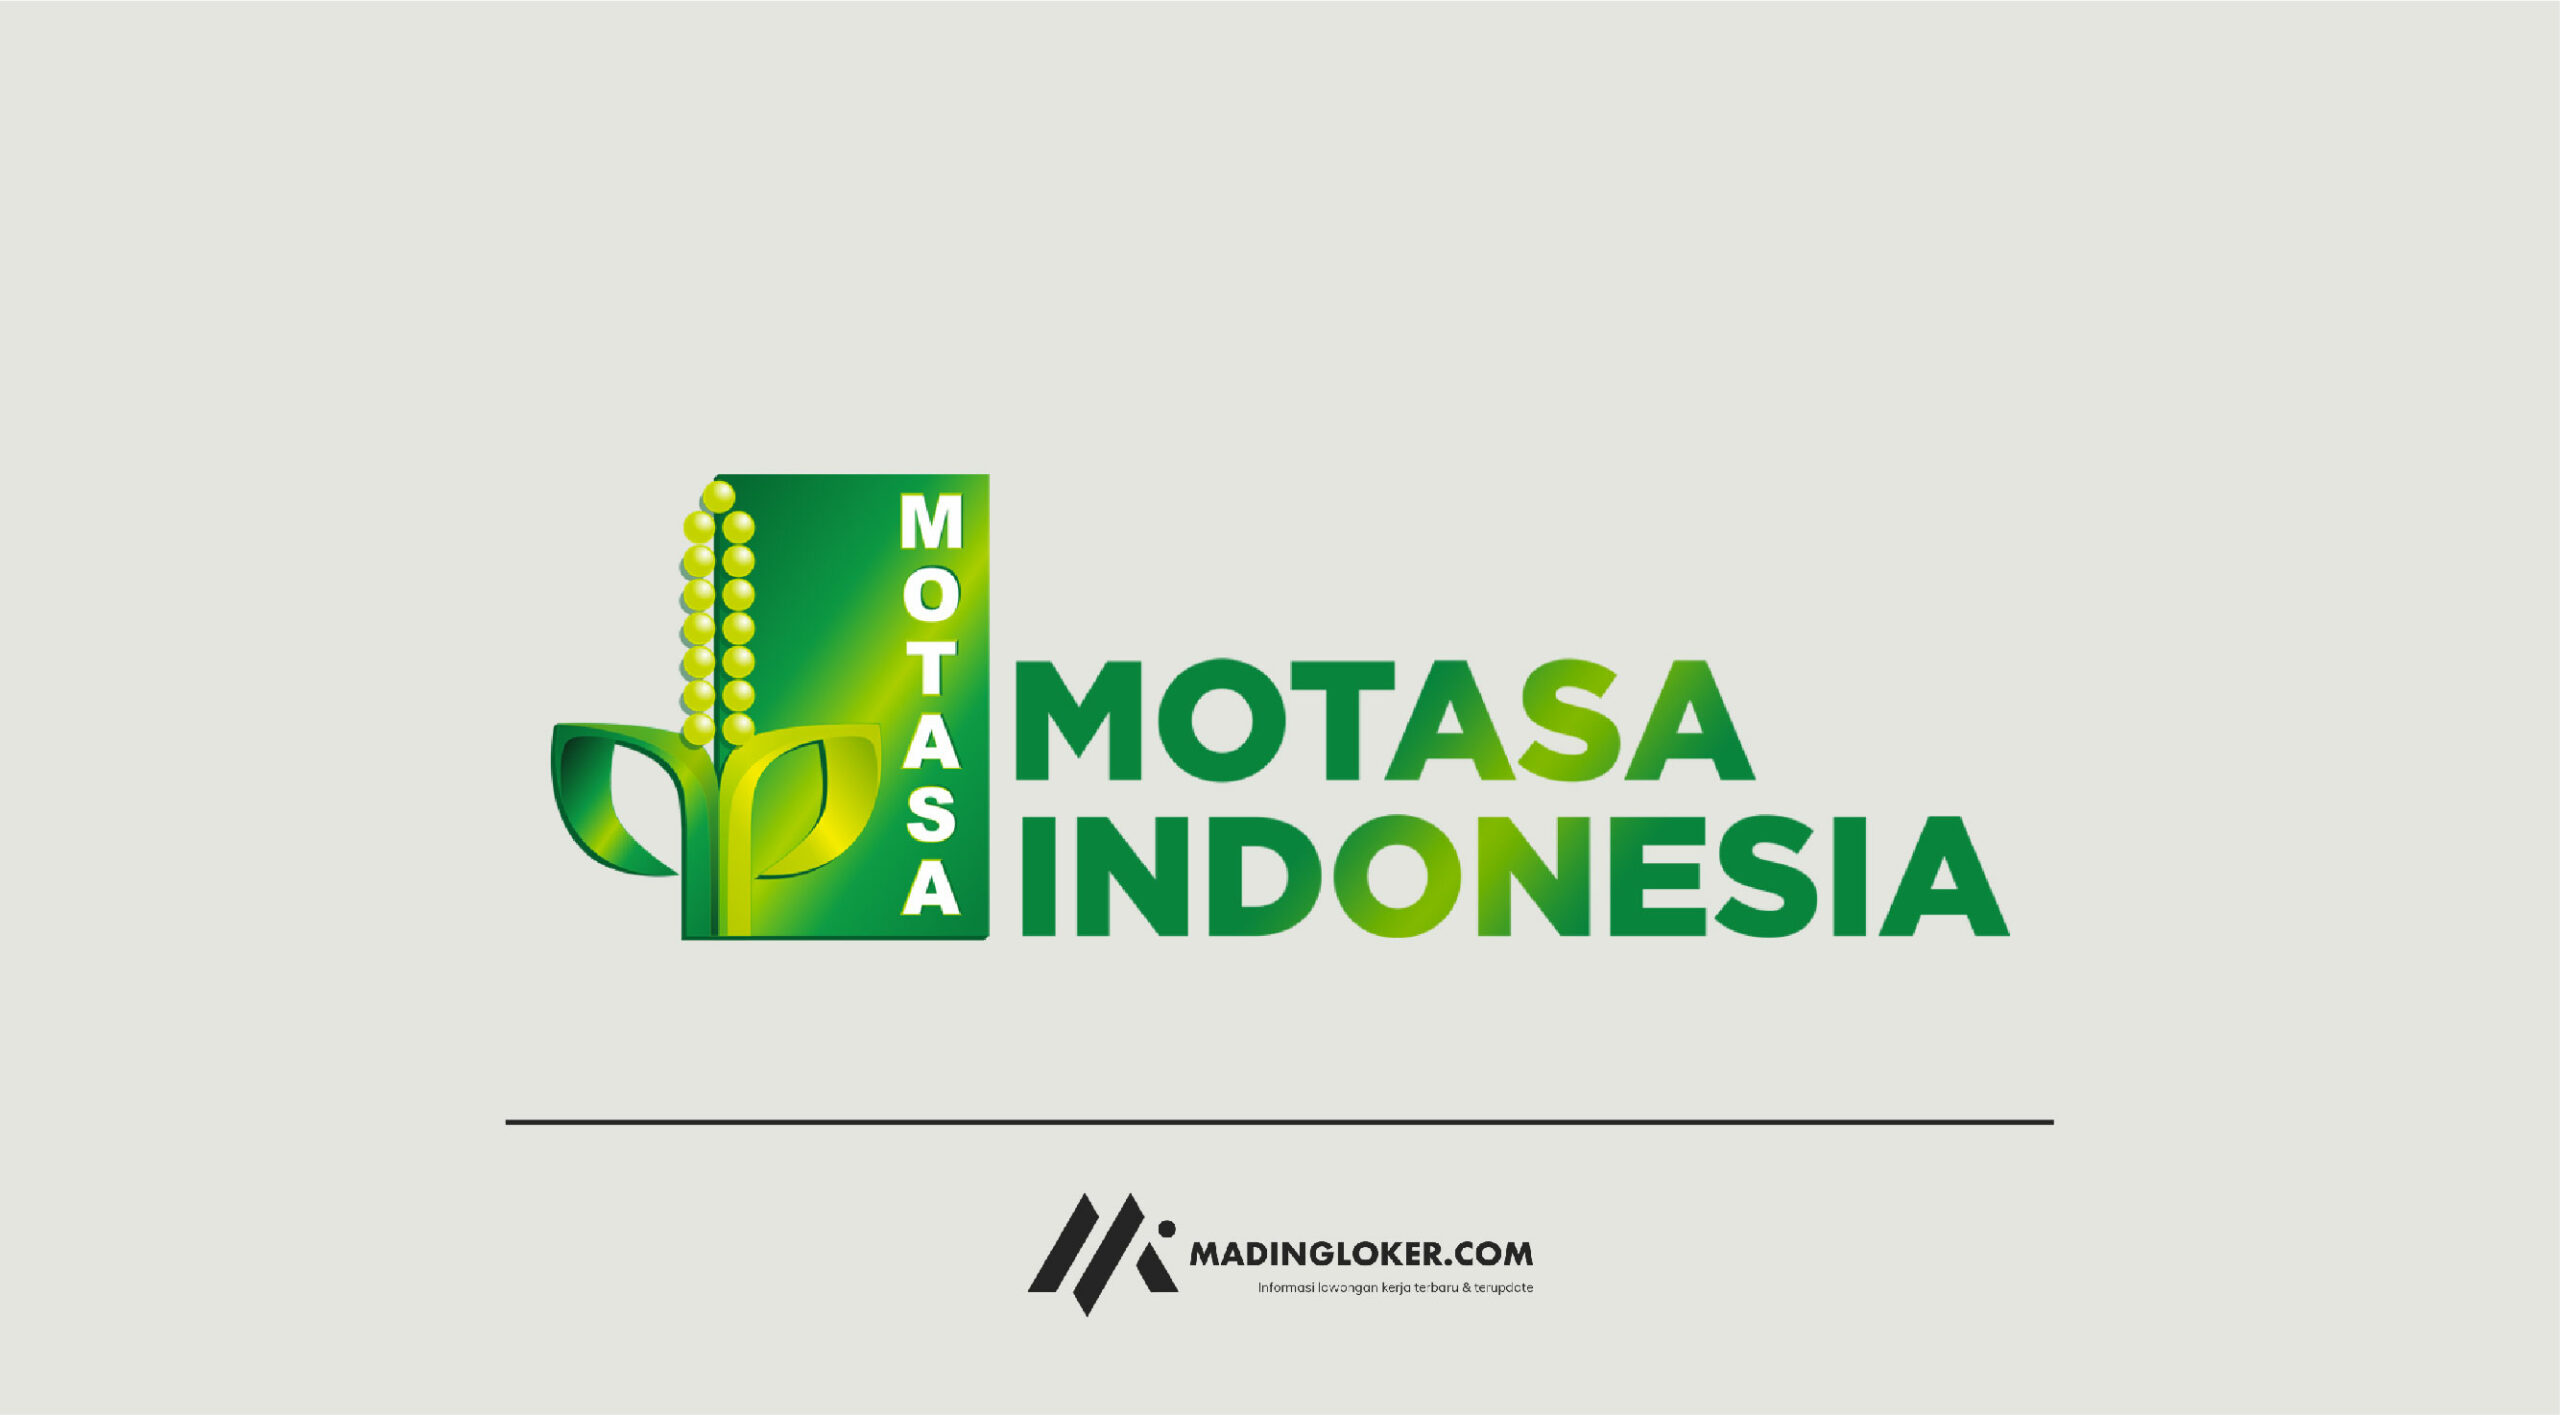 Lowongan Kerja Operator Produksi PT Motasa Indonesia - Madingloker